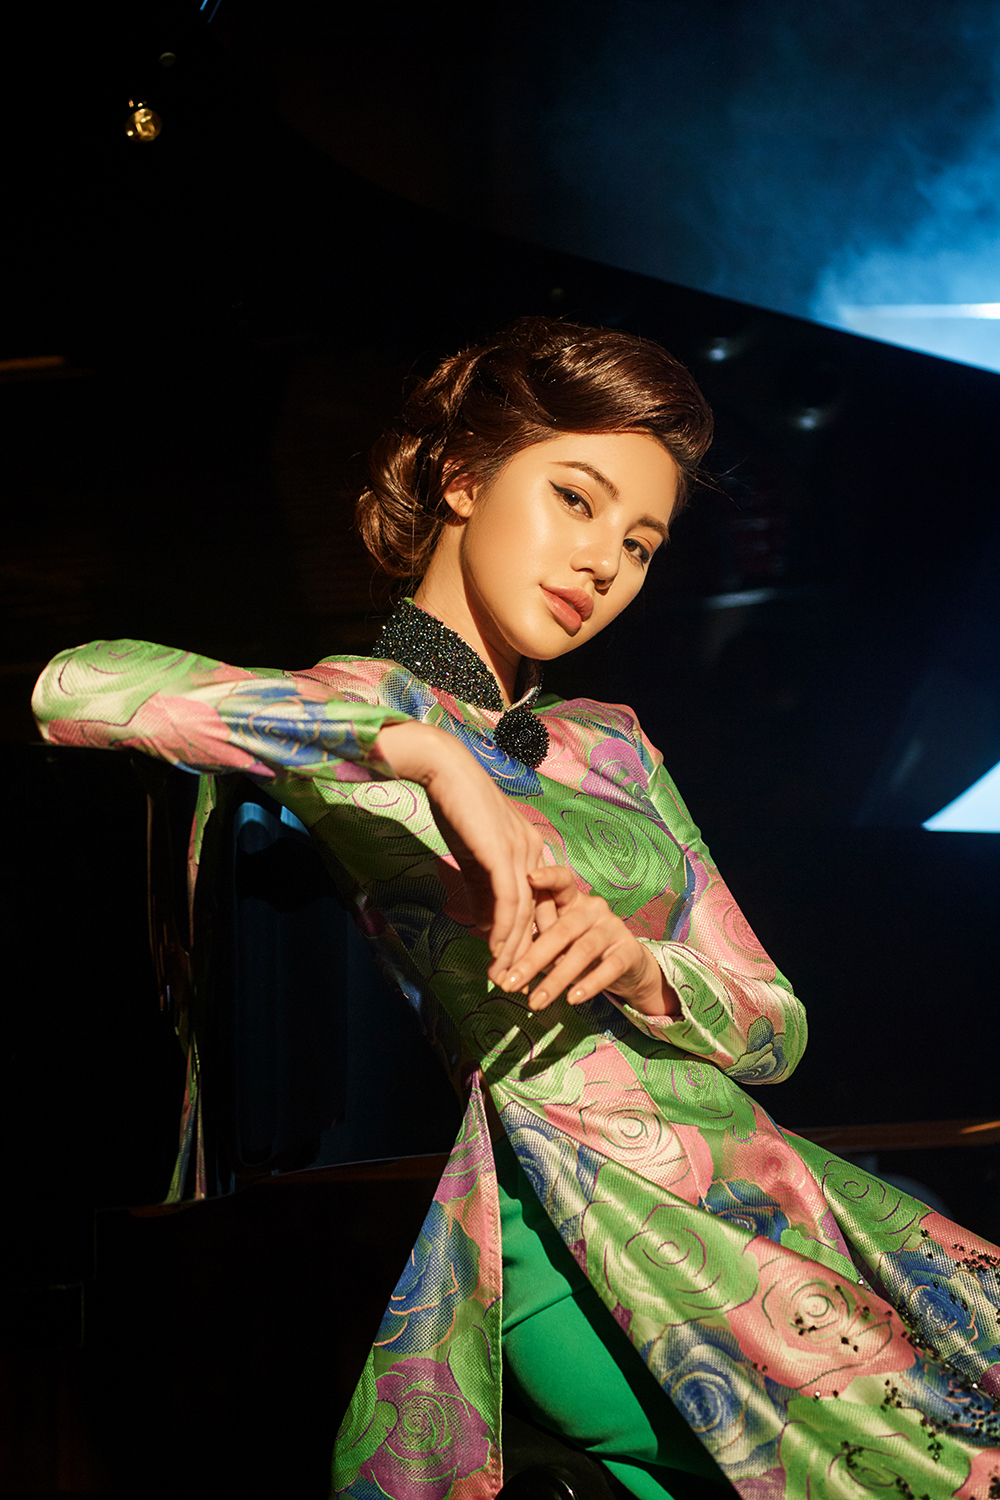 Nổi tiếng vì sử dụng hàng loạt đồ hiệu đắt giá và hình ảnh nóng bỏng, Jolie Nguyễn khiến nhiều người bất ngờ khi diện trang phục áo dài cổ điển, thanh lịch trong bộ sưu tập “Diva quyến rũ” của NTK Kenny Thái. 